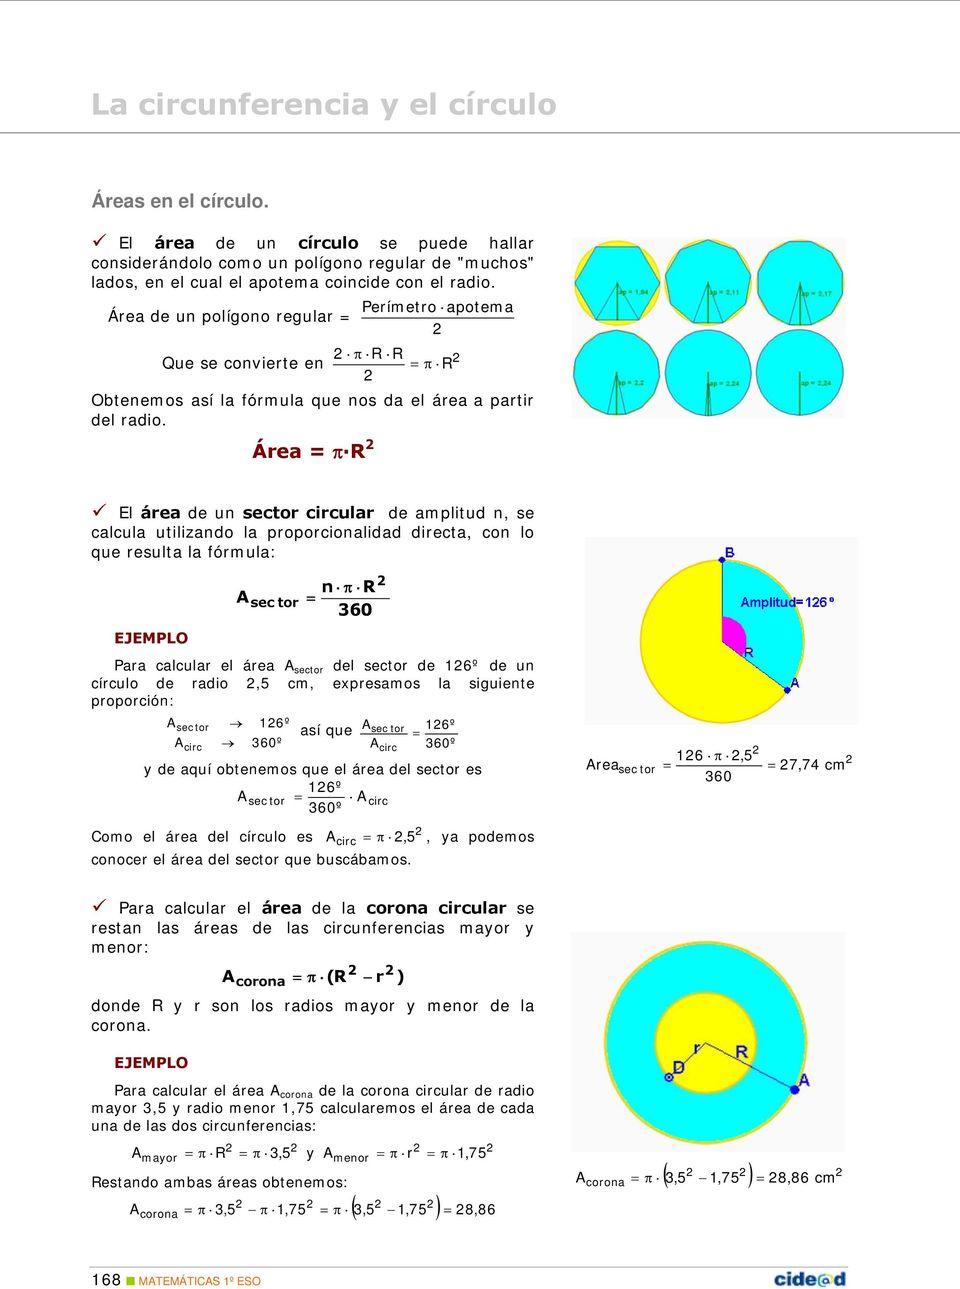 Área = π R El área de un sector circular de amplitud n, se calcula utilizando la proporcionalidad directa, con lo que resulta la fórmula: EJEMPLO A sec tor n π R = Para calcular el área A sector del